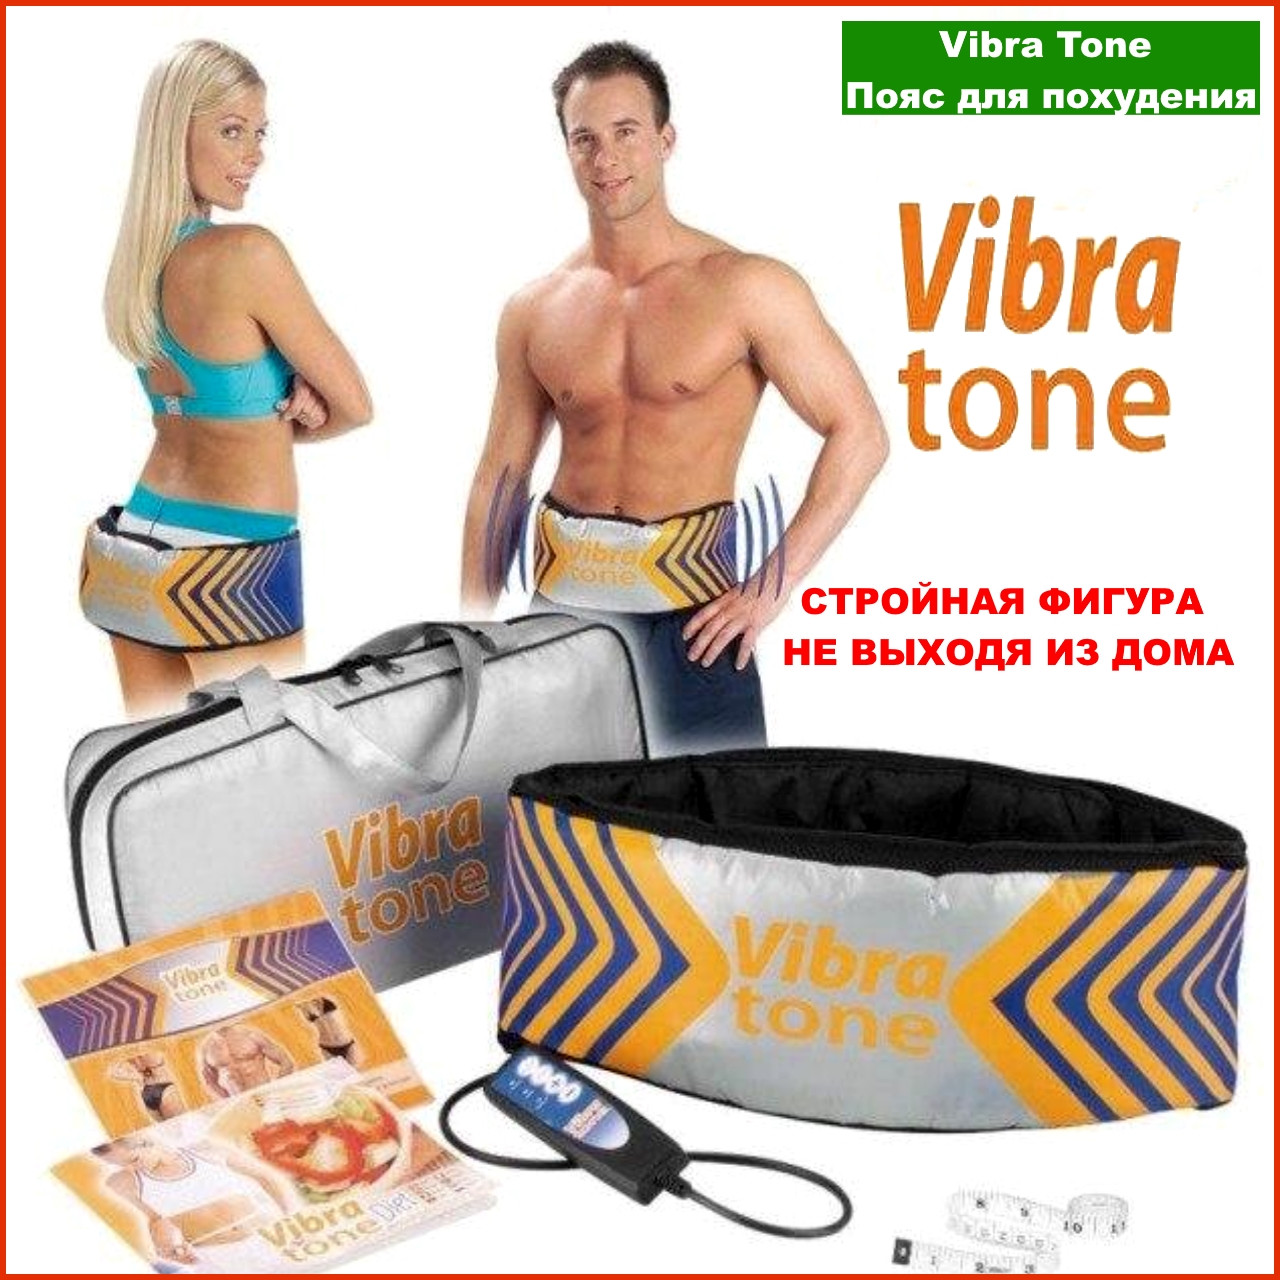 Vibra Tone пояс для похудения отзывы. Vibra Tone пояс для похудения инструкция по применению. Вибратон помогает убрать живот отзывы.